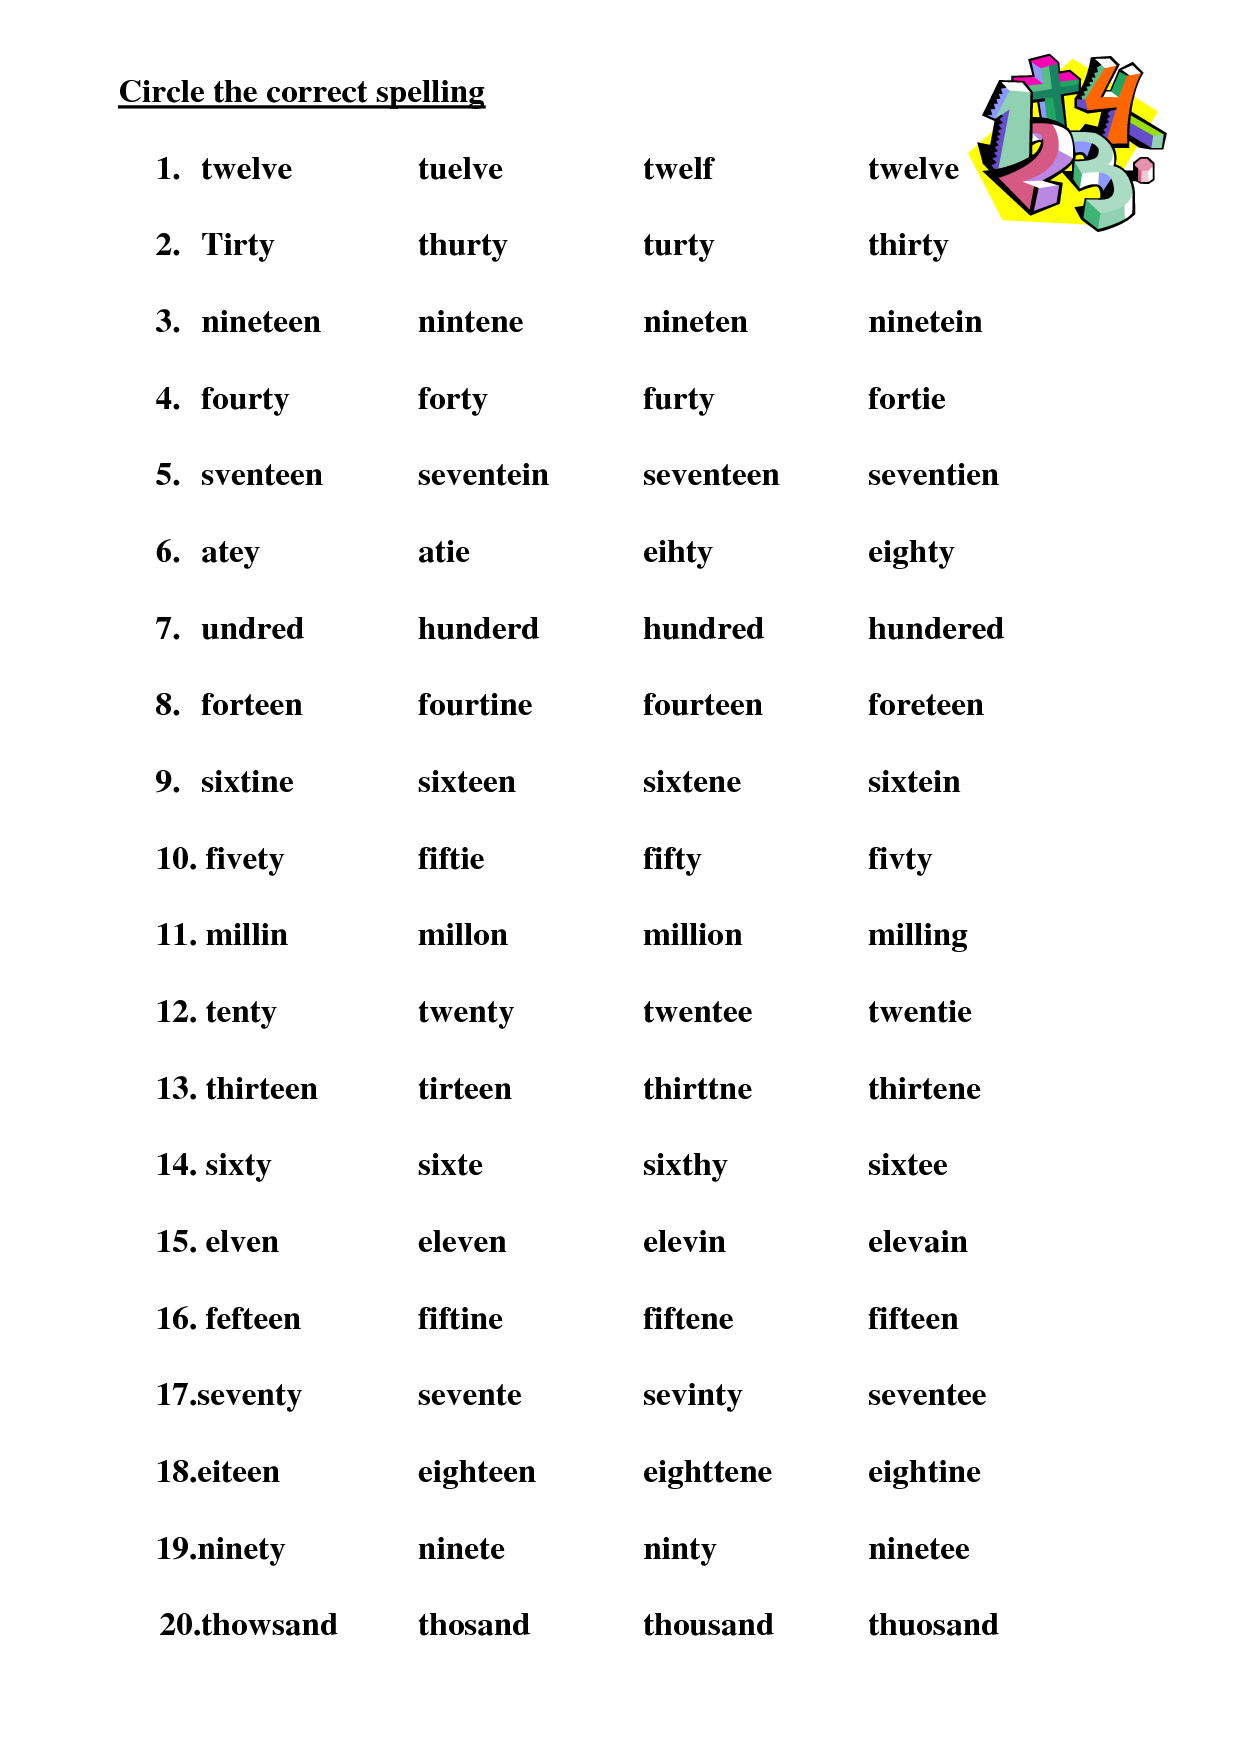 spelling-worksheets-spelling-worksheets-worksheet-ideas